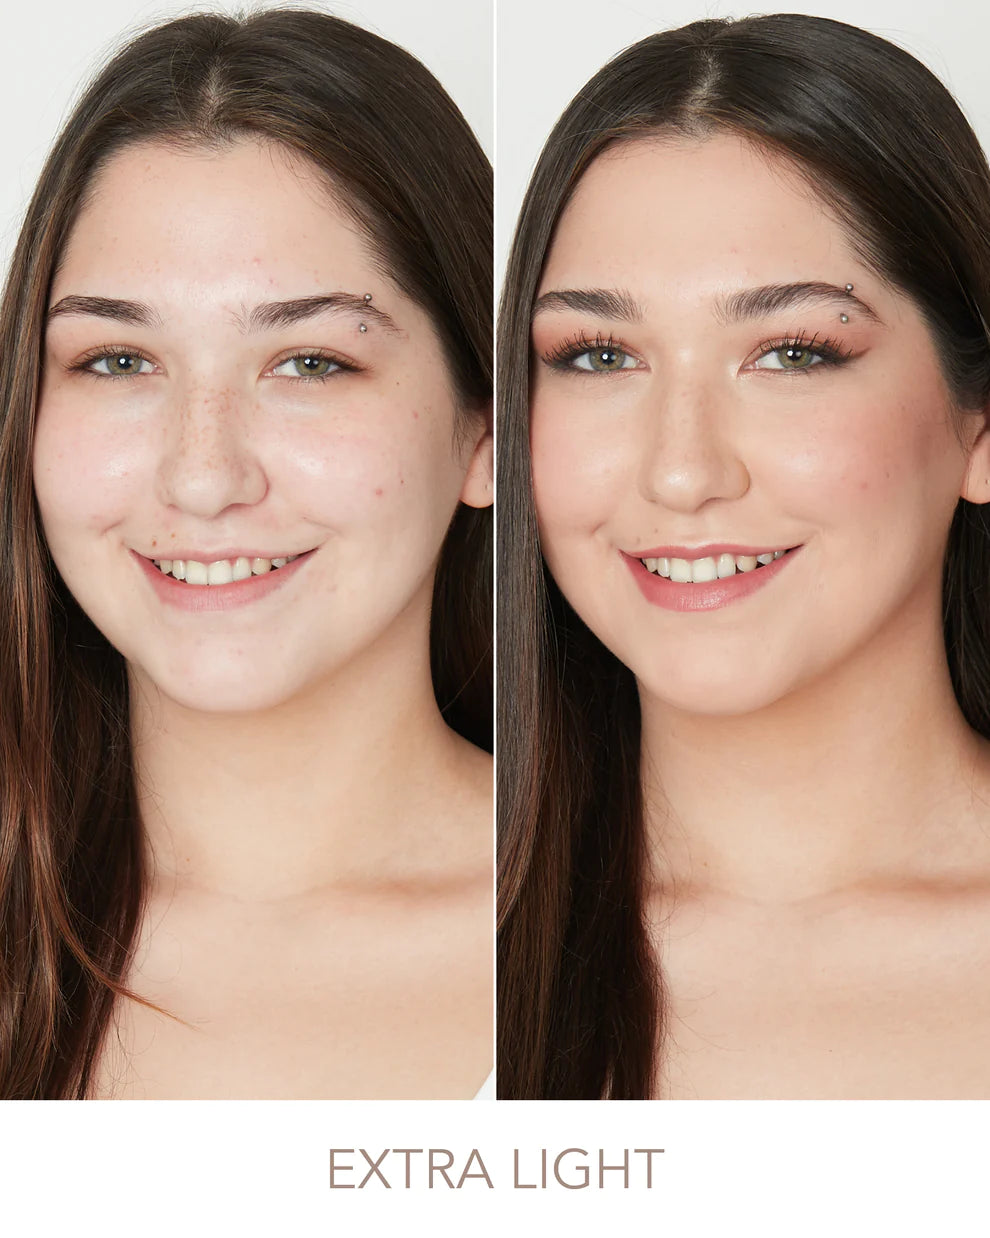 Set Completo de Maquillaje OKWU - Base, Corrector y Brochas Pro